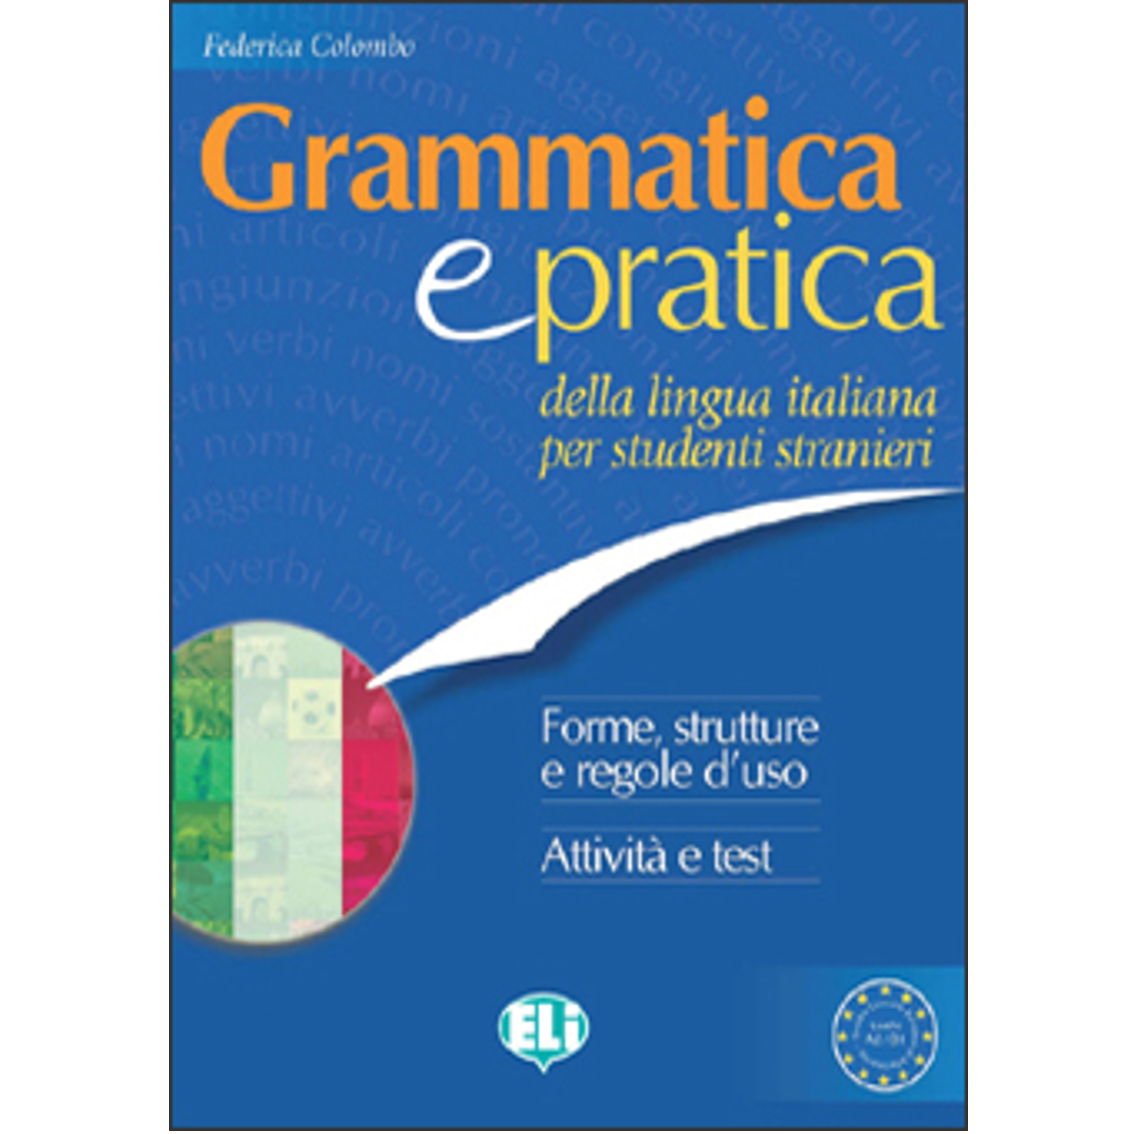 Grammatica e pratica della lingua italiana Lenguas Modernas Editores